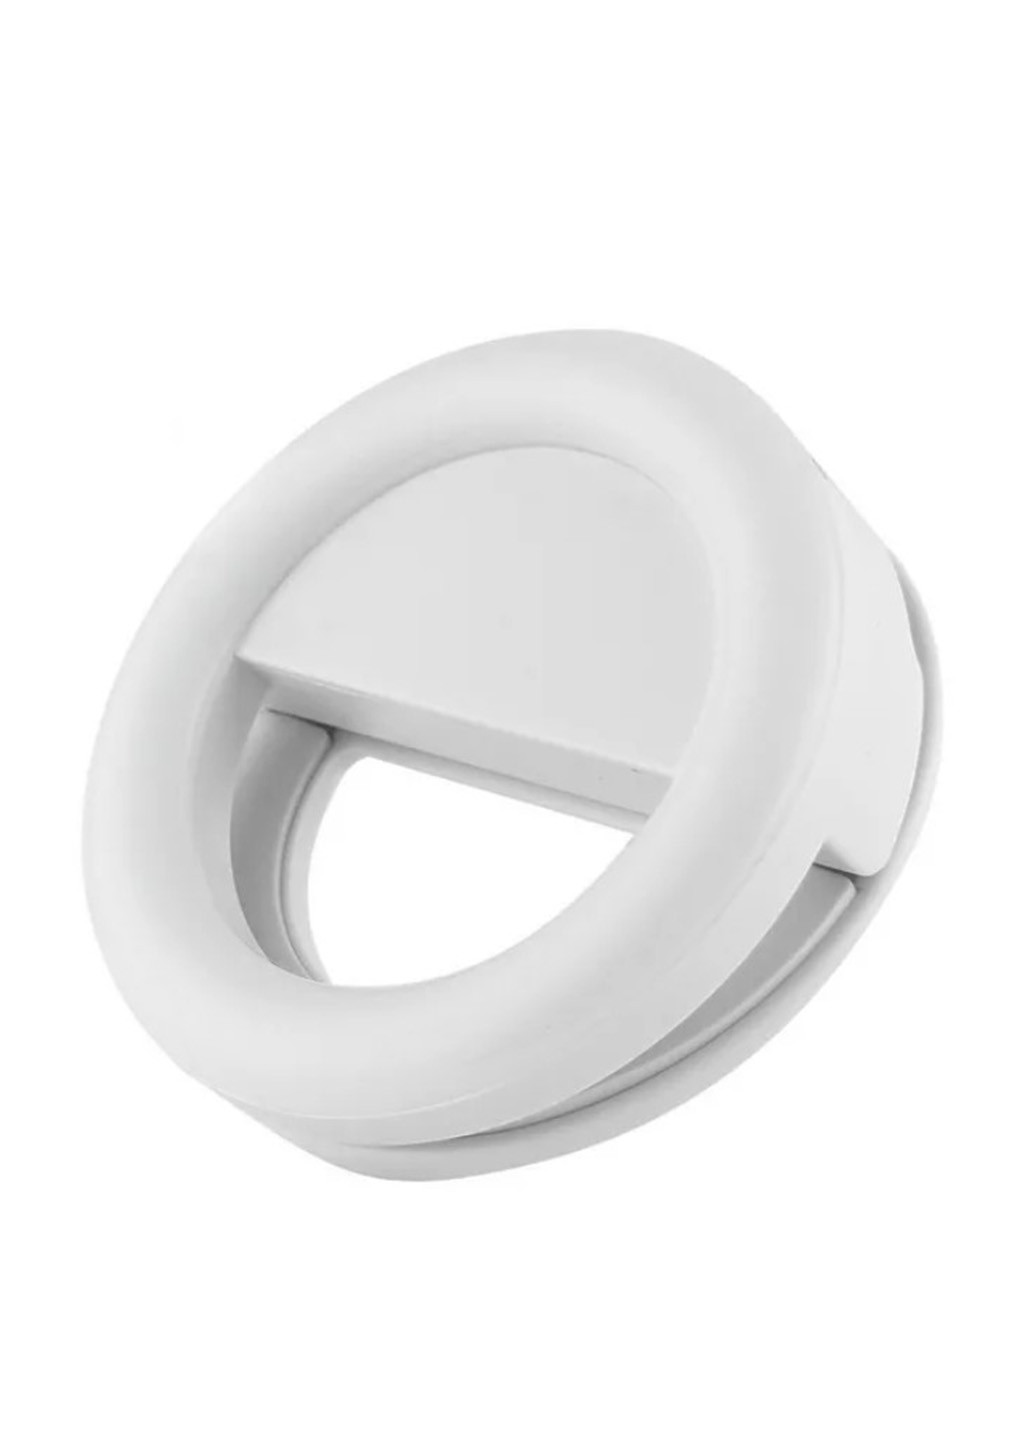 Селфи-кольцо, 8,5х8,5х3 см UFT (133199900)